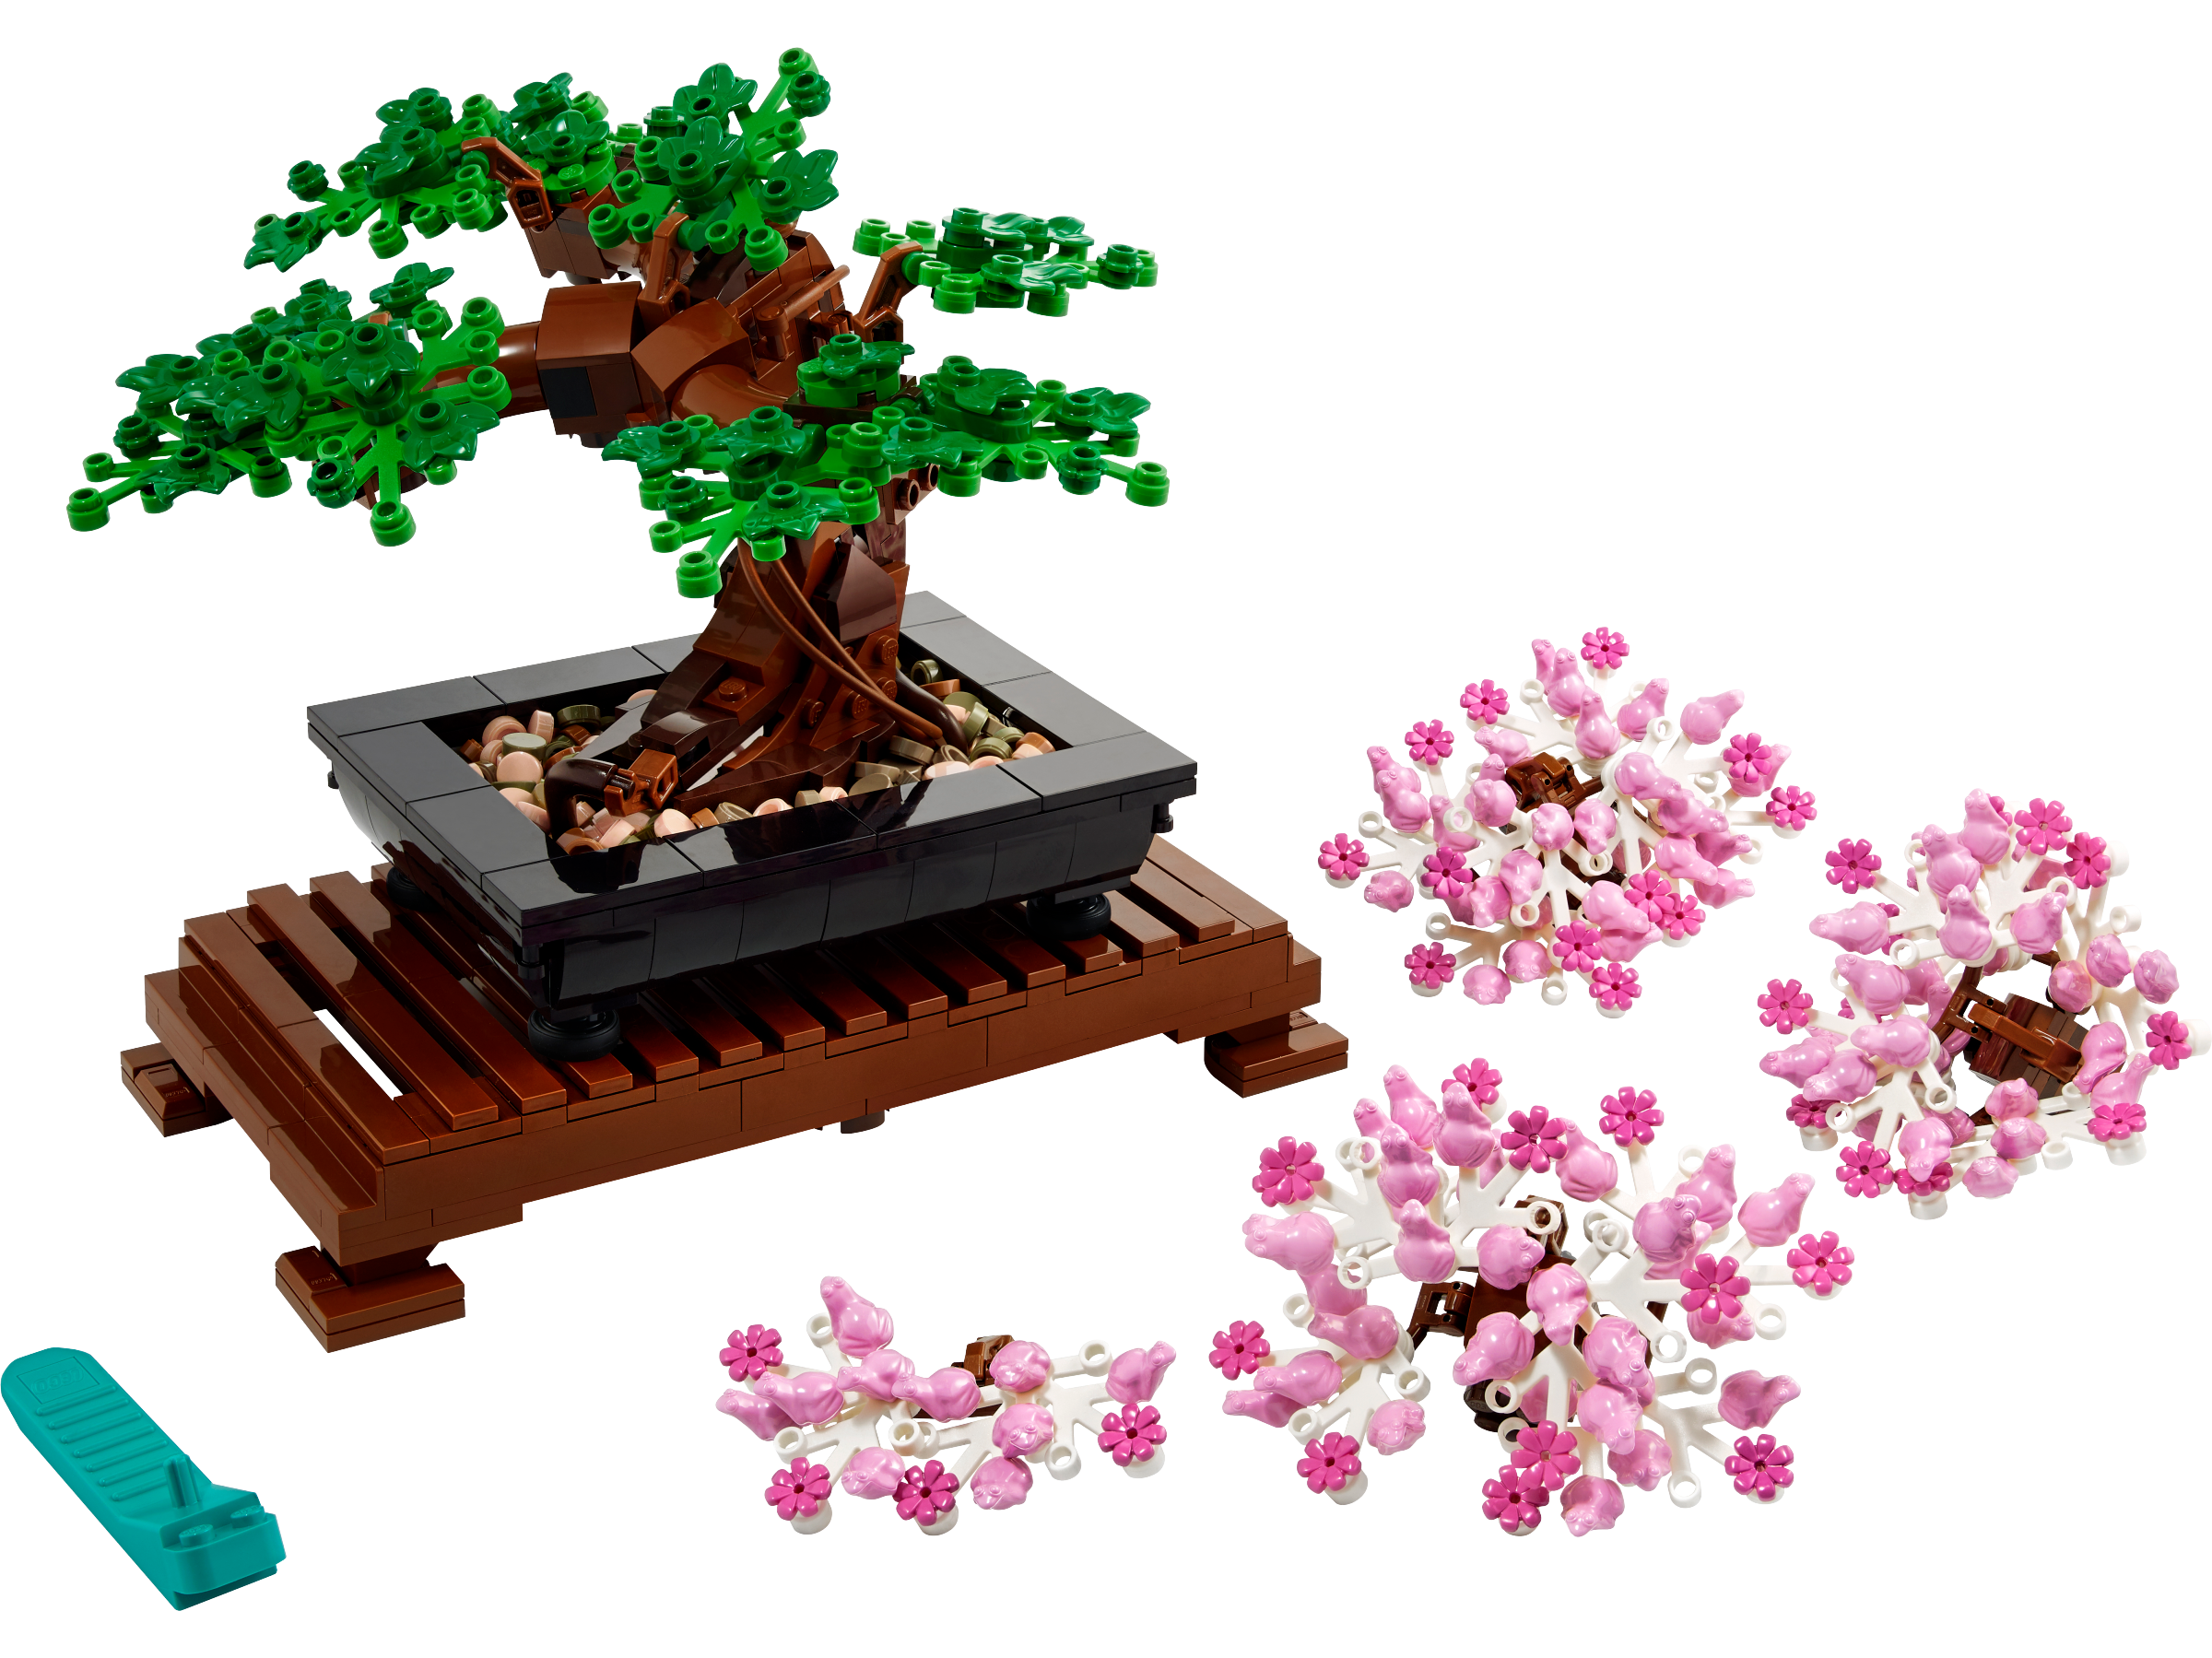 LEGO® Icons 10315 Le Jardin Paisible, Kit de Jardinage Botanique